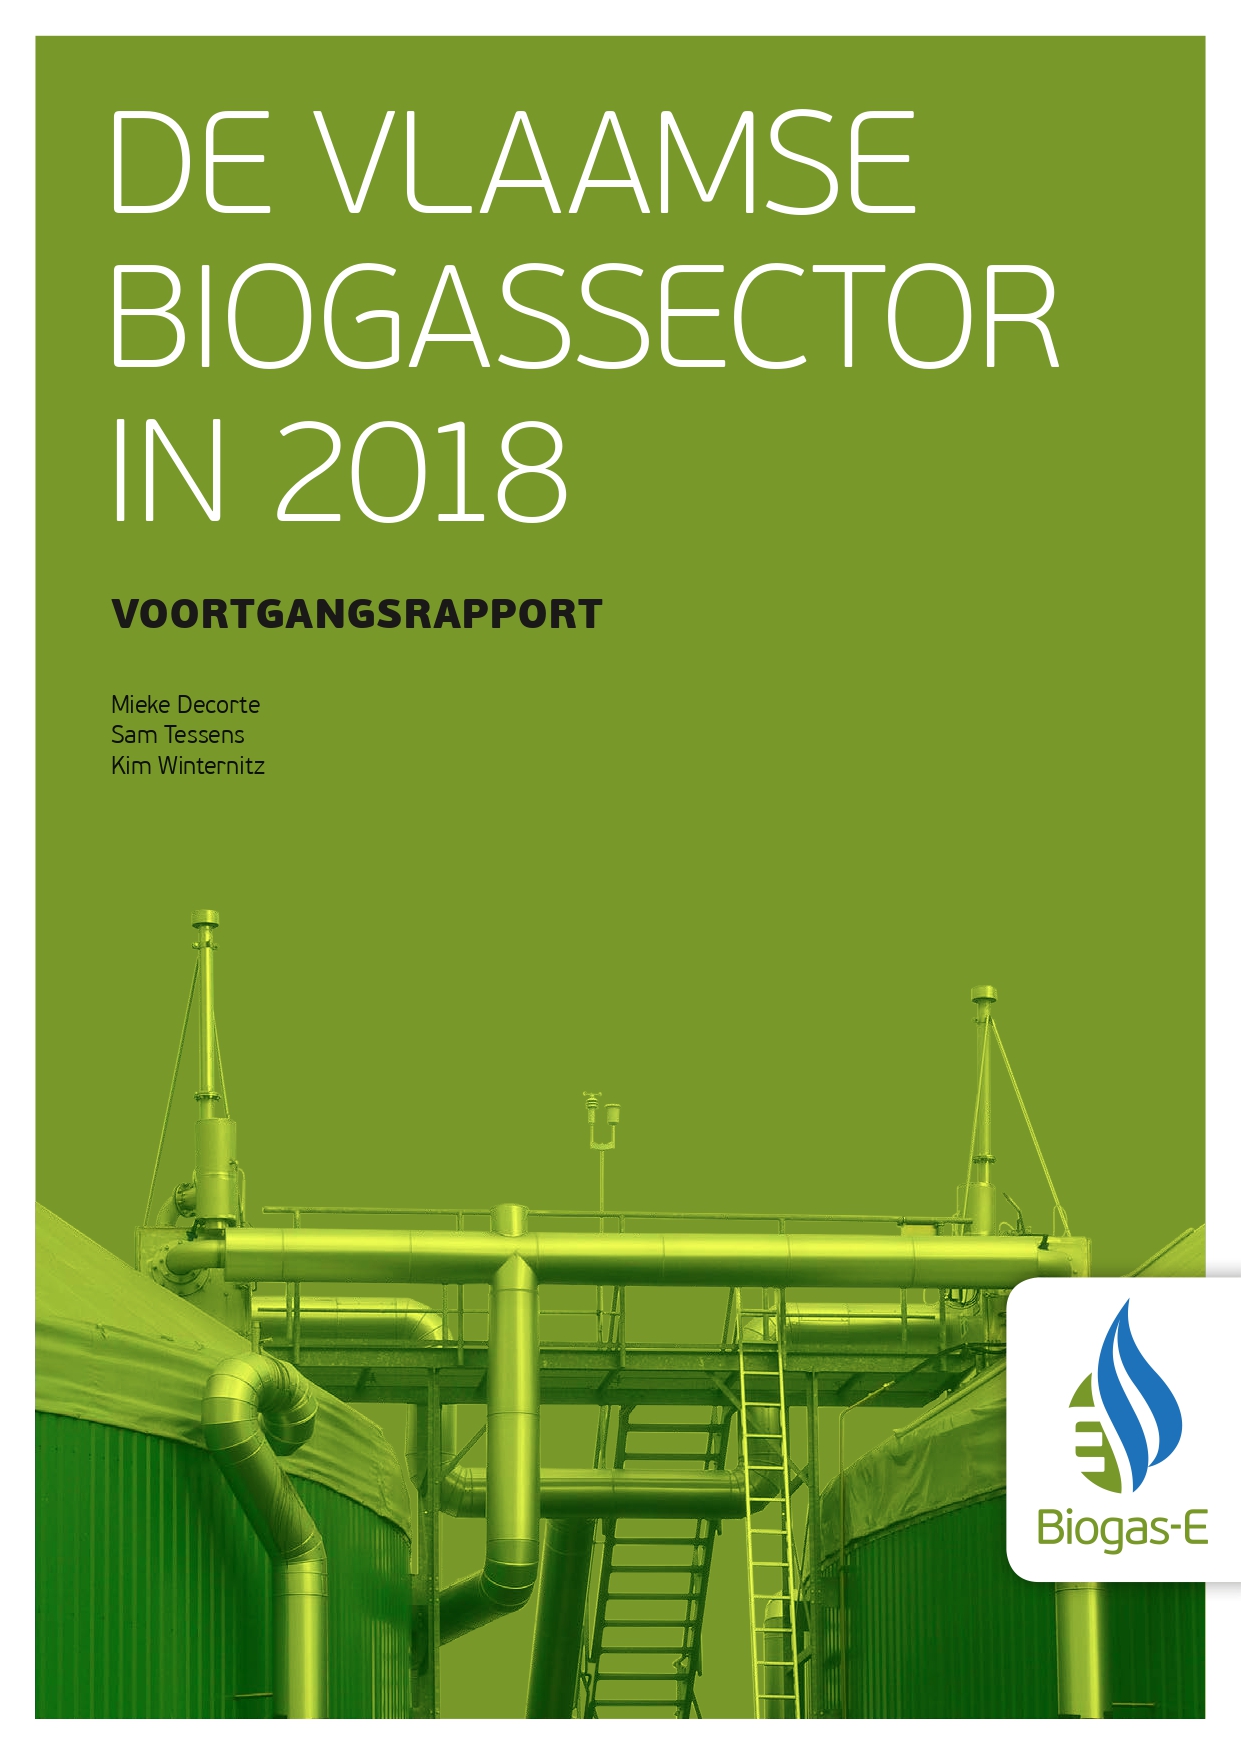 De Vlaamse biogassector in 2018